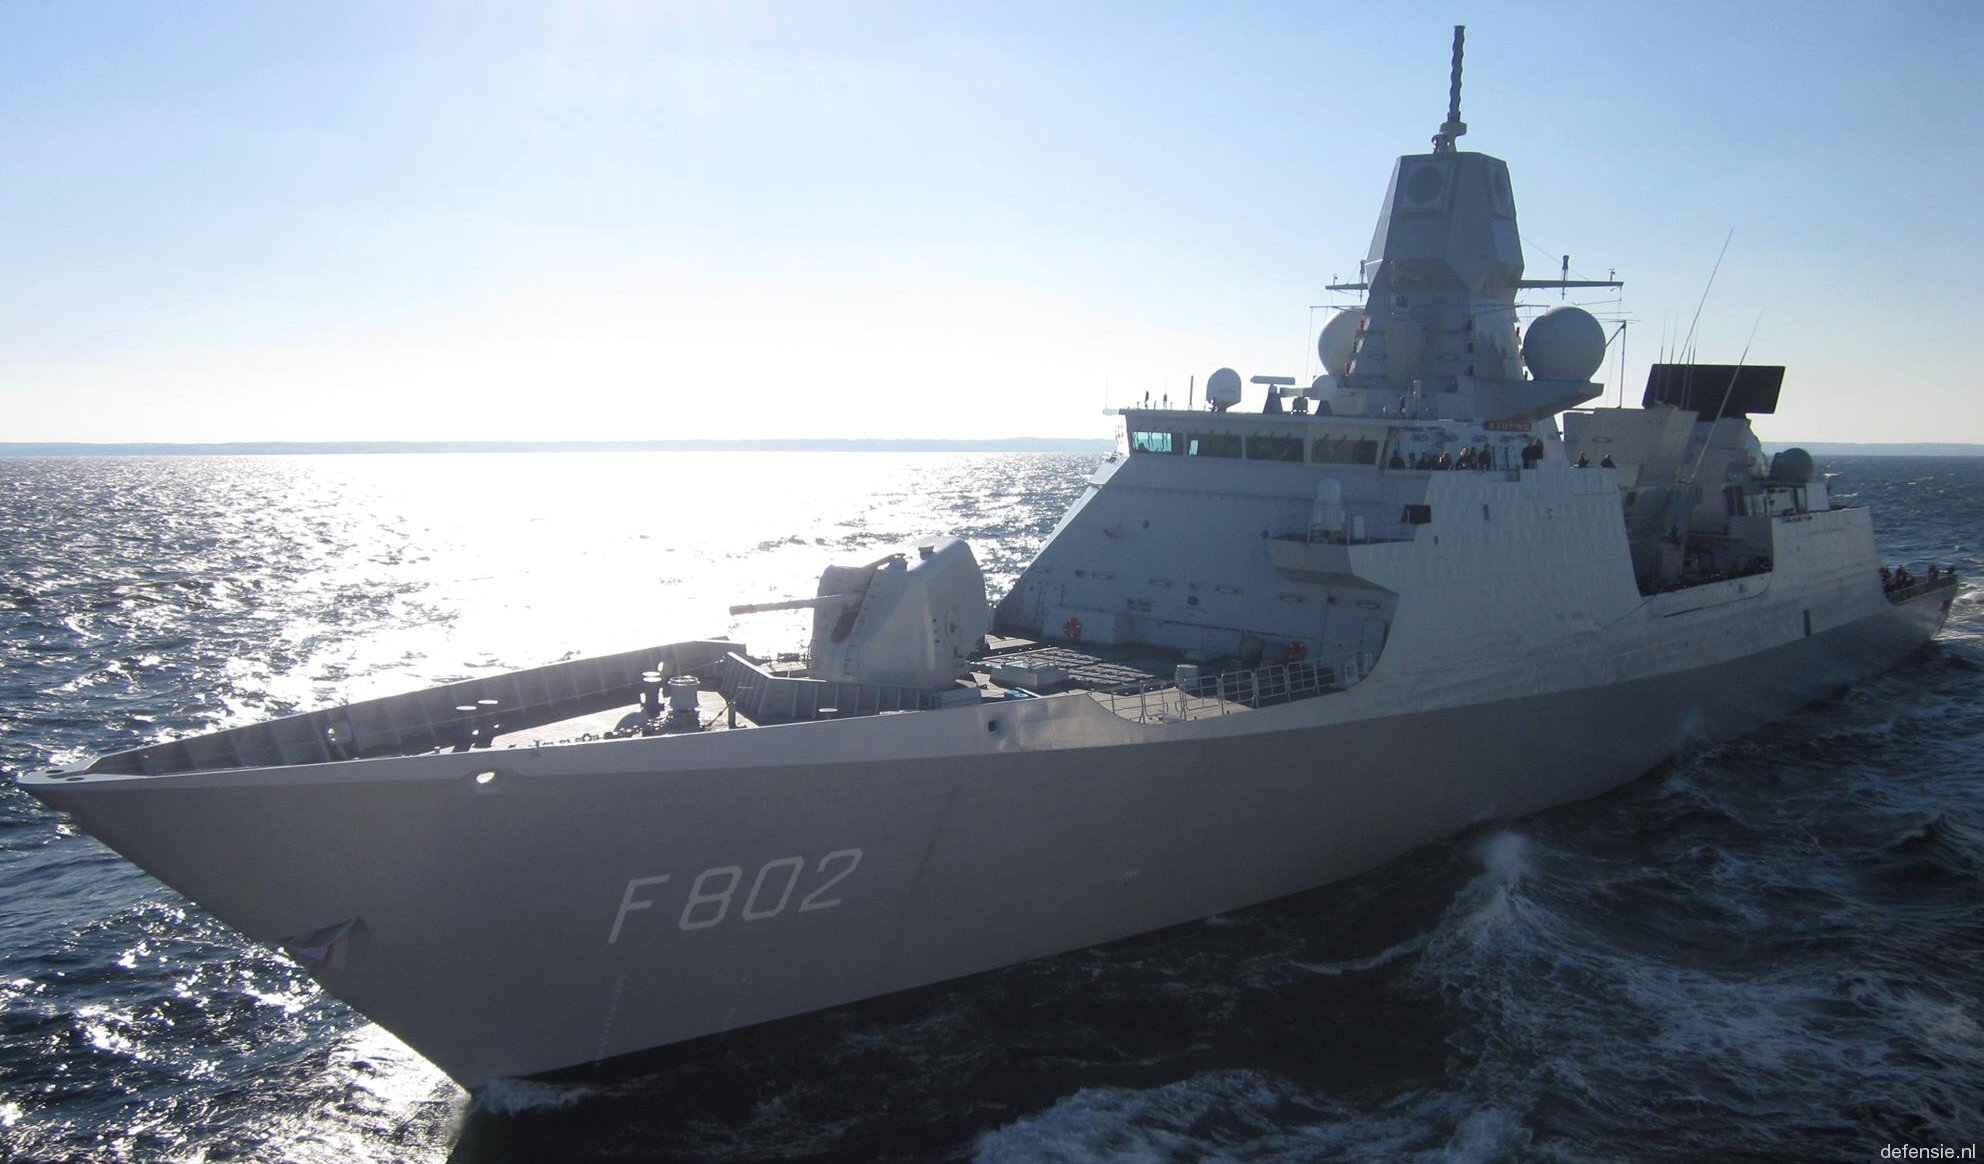 f-802 hnlms de zeven provincien guided missile frigate ffg royal netherlands navy 11